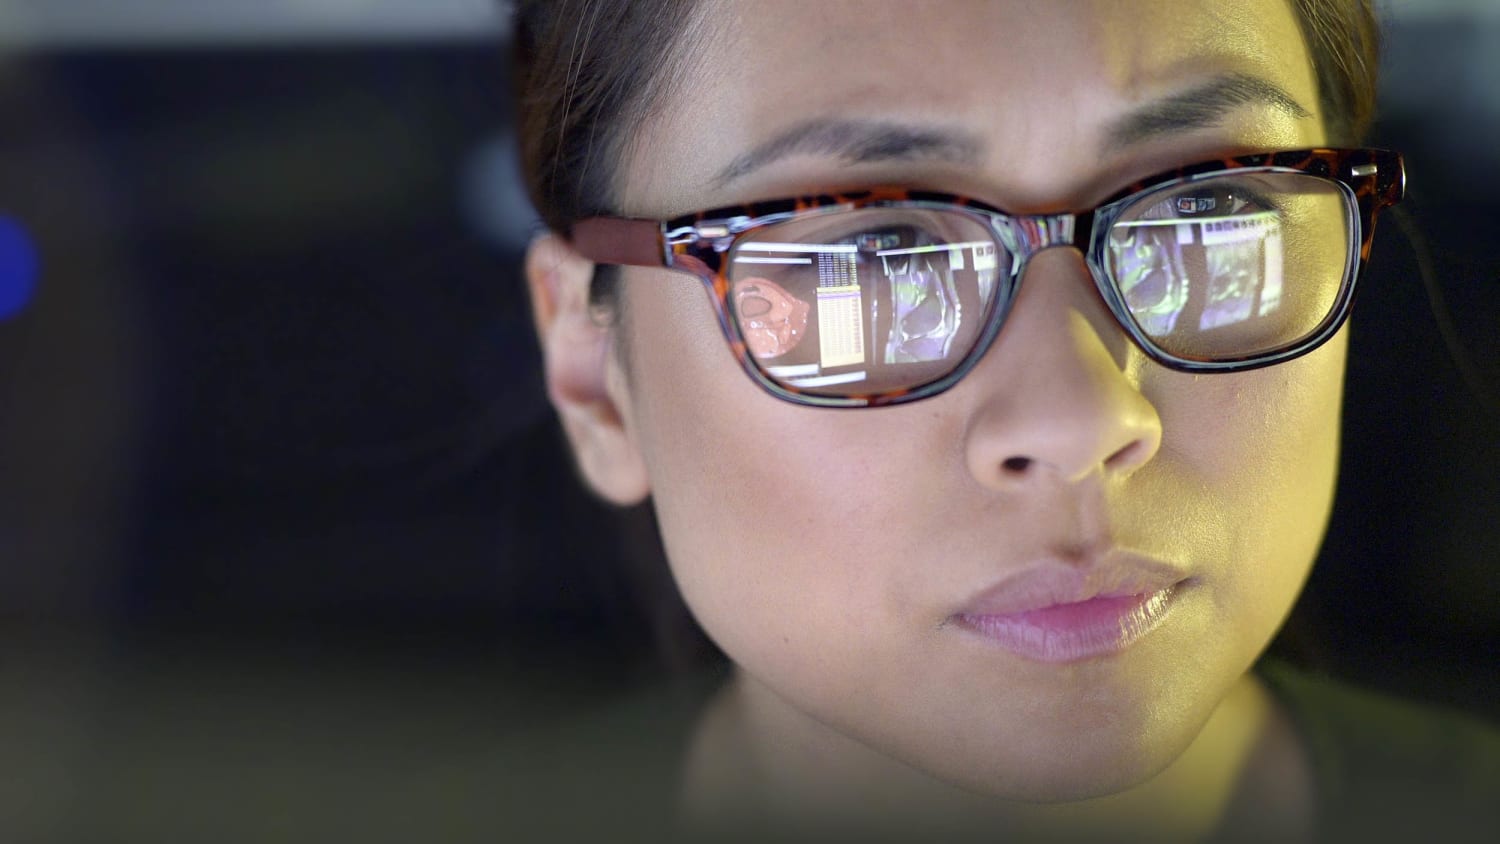 Do Blue Light Glasses Work? Benefits, 12 Best Glasses To Buy 2020